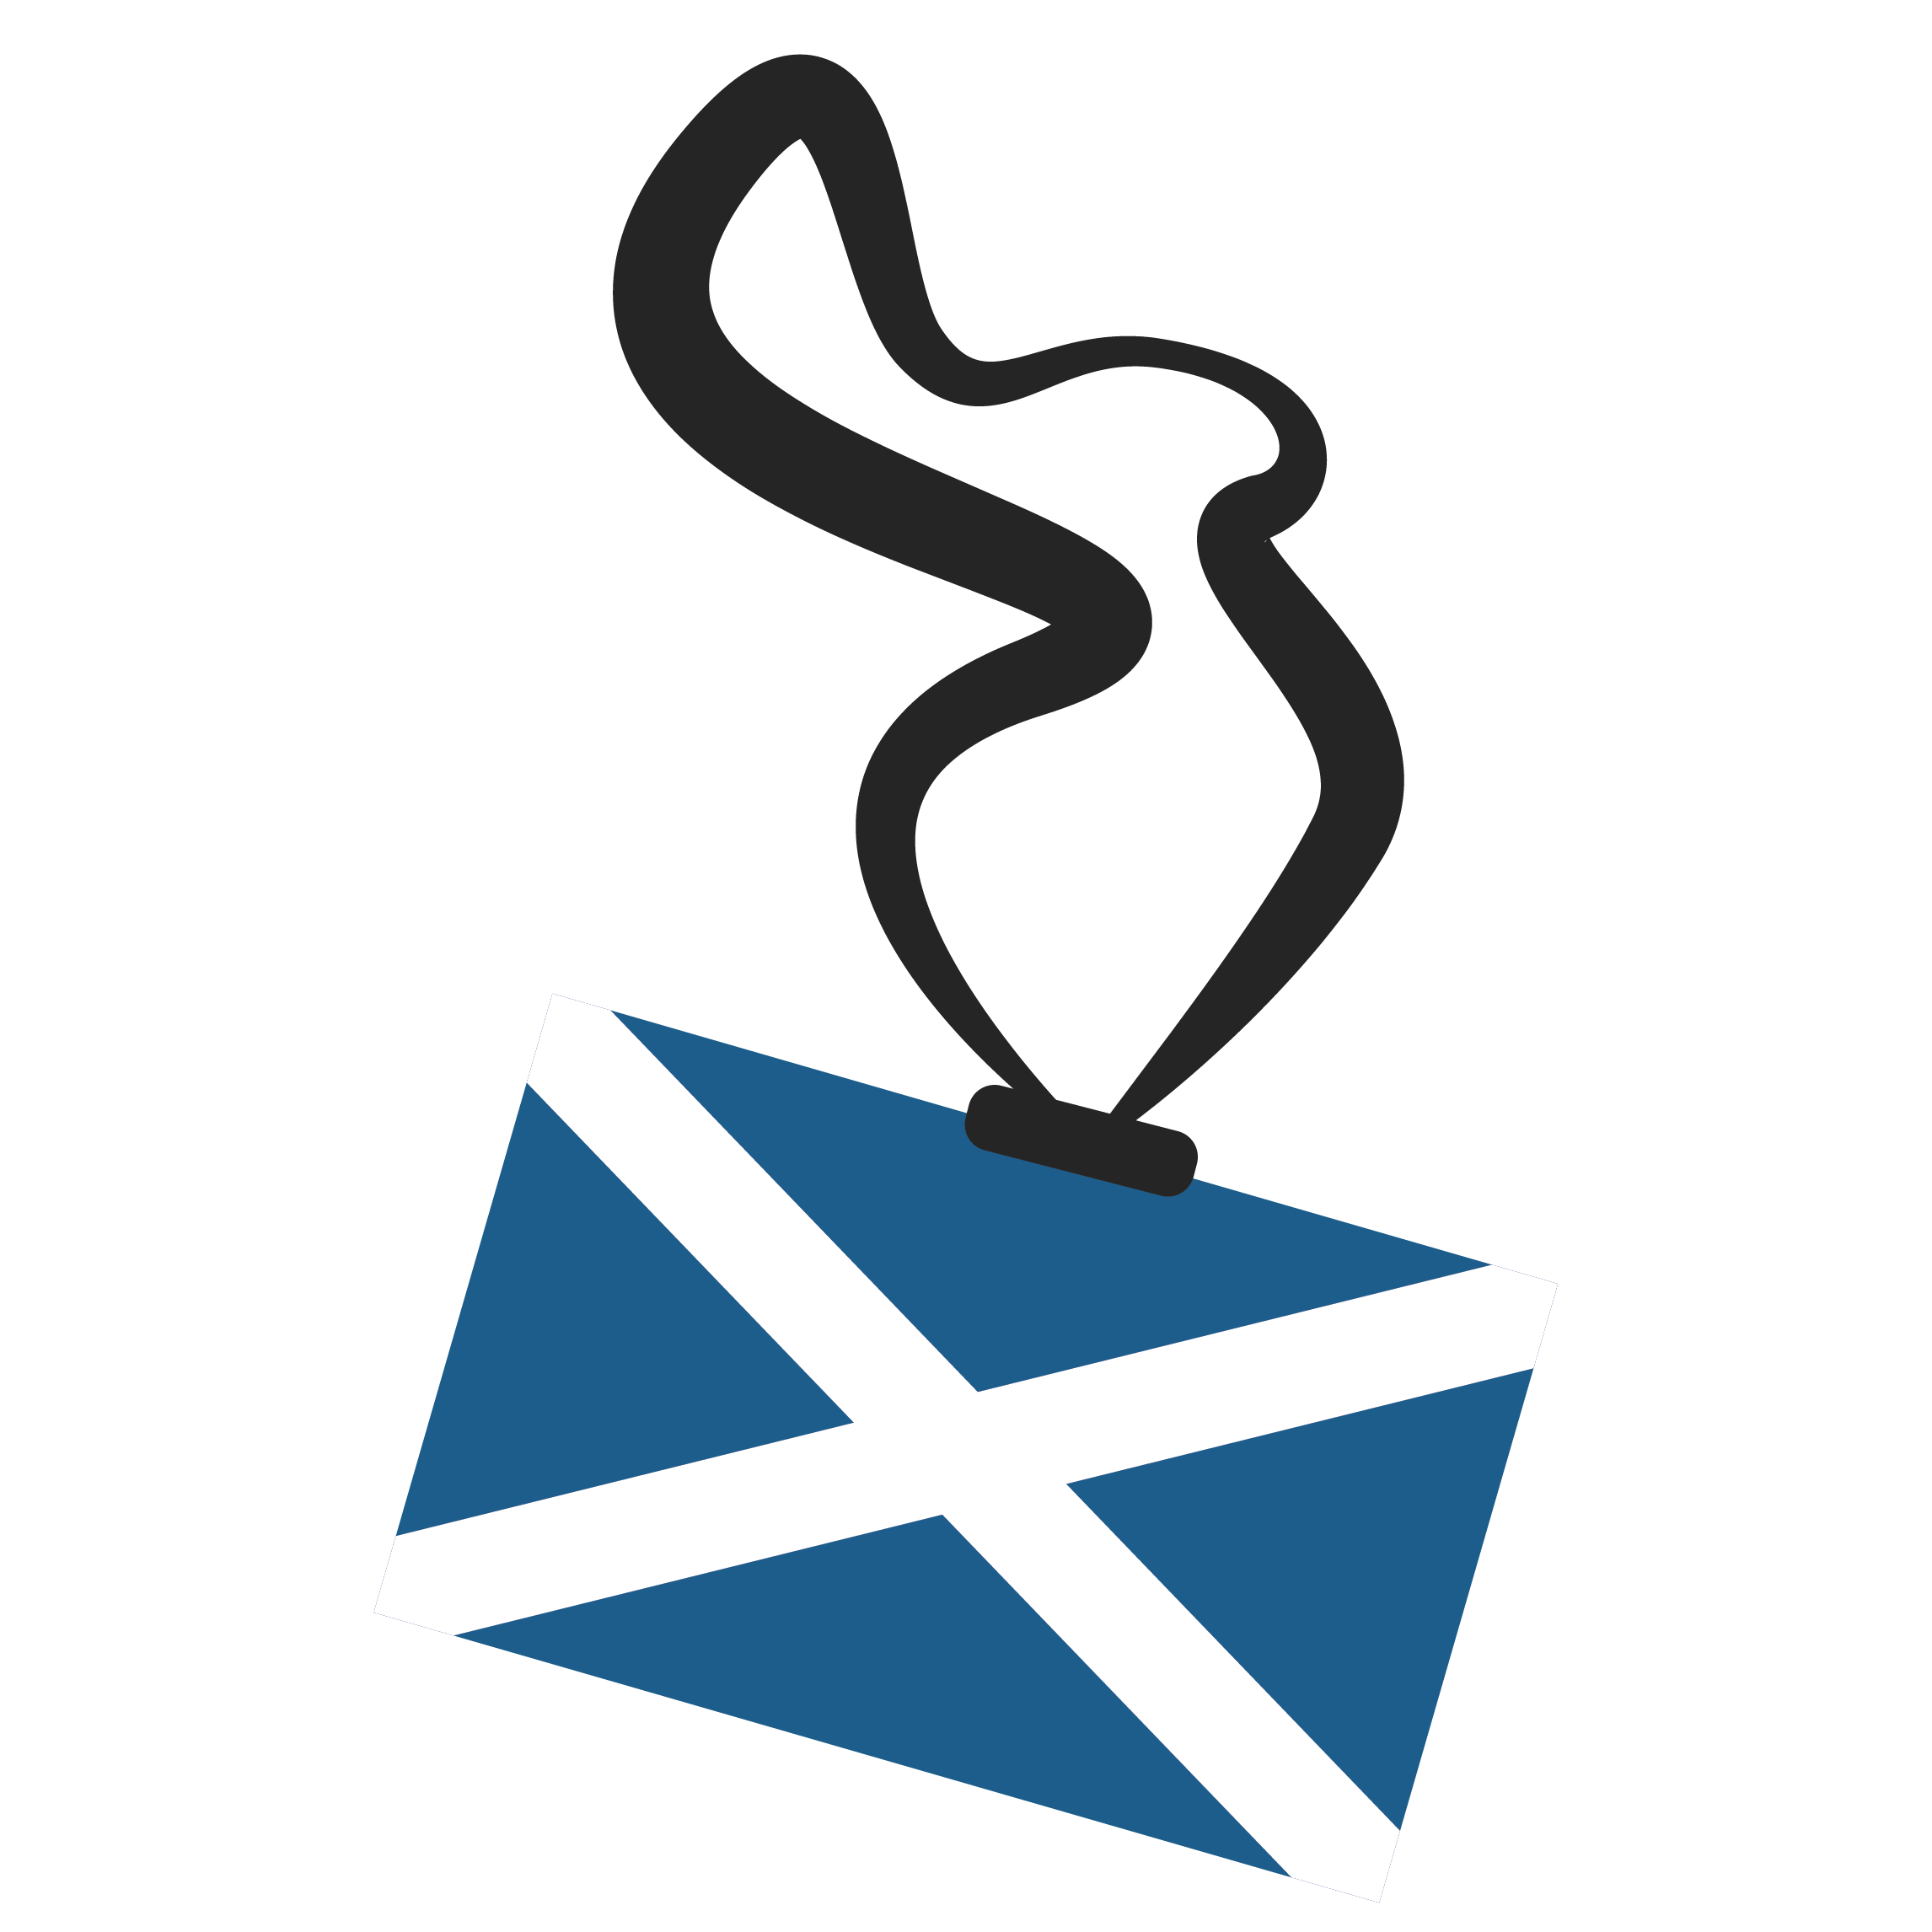 Edinburgh Fringe newsletter icon